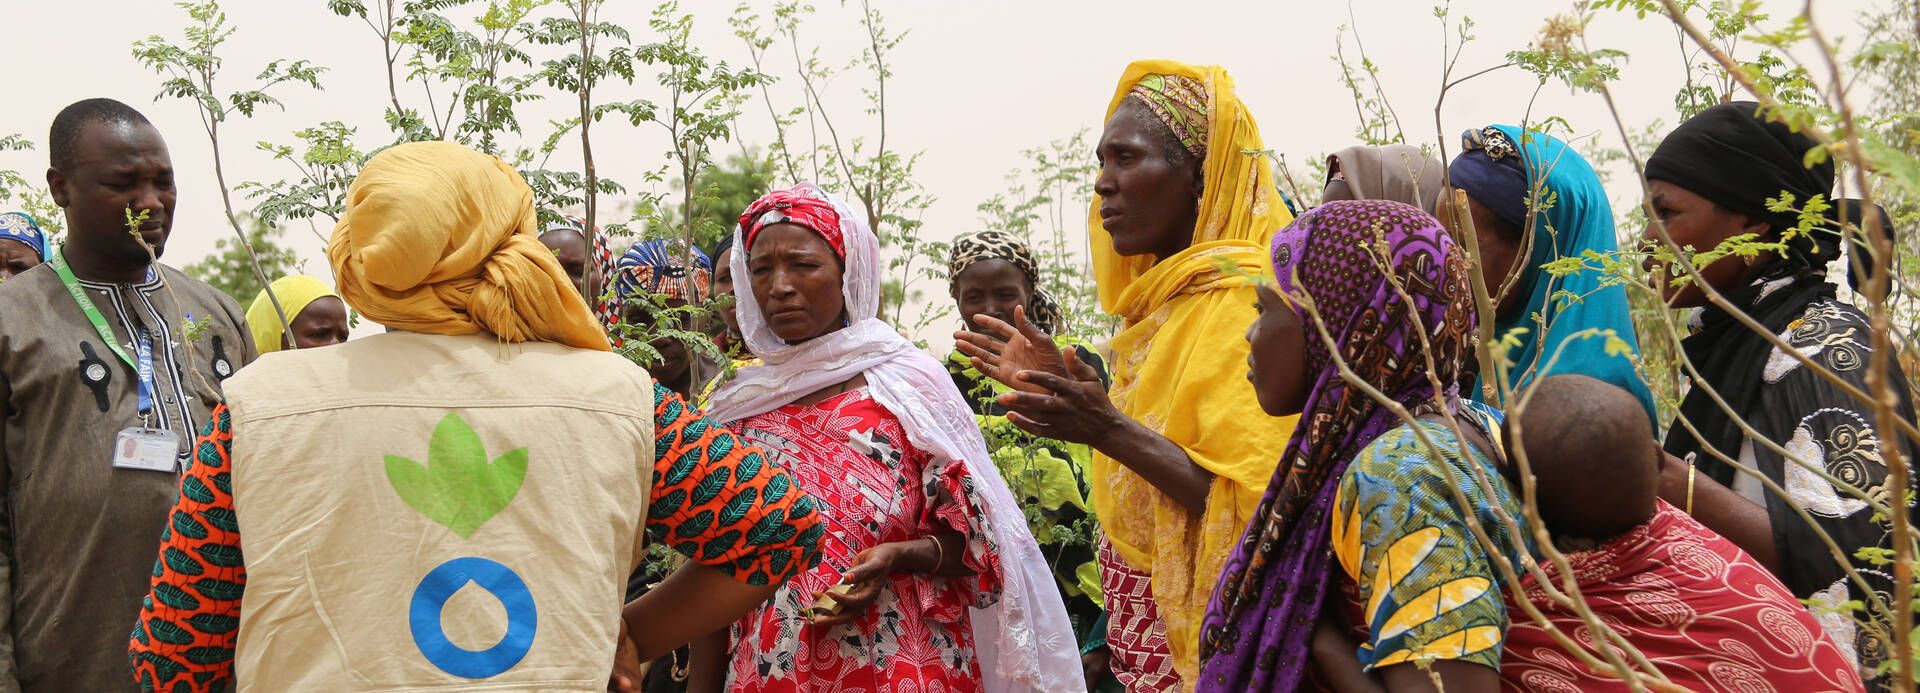 Frauen aus dem Niger sprechen mit zwei Mitarbeitenden von Aktion gegen den Hunger.